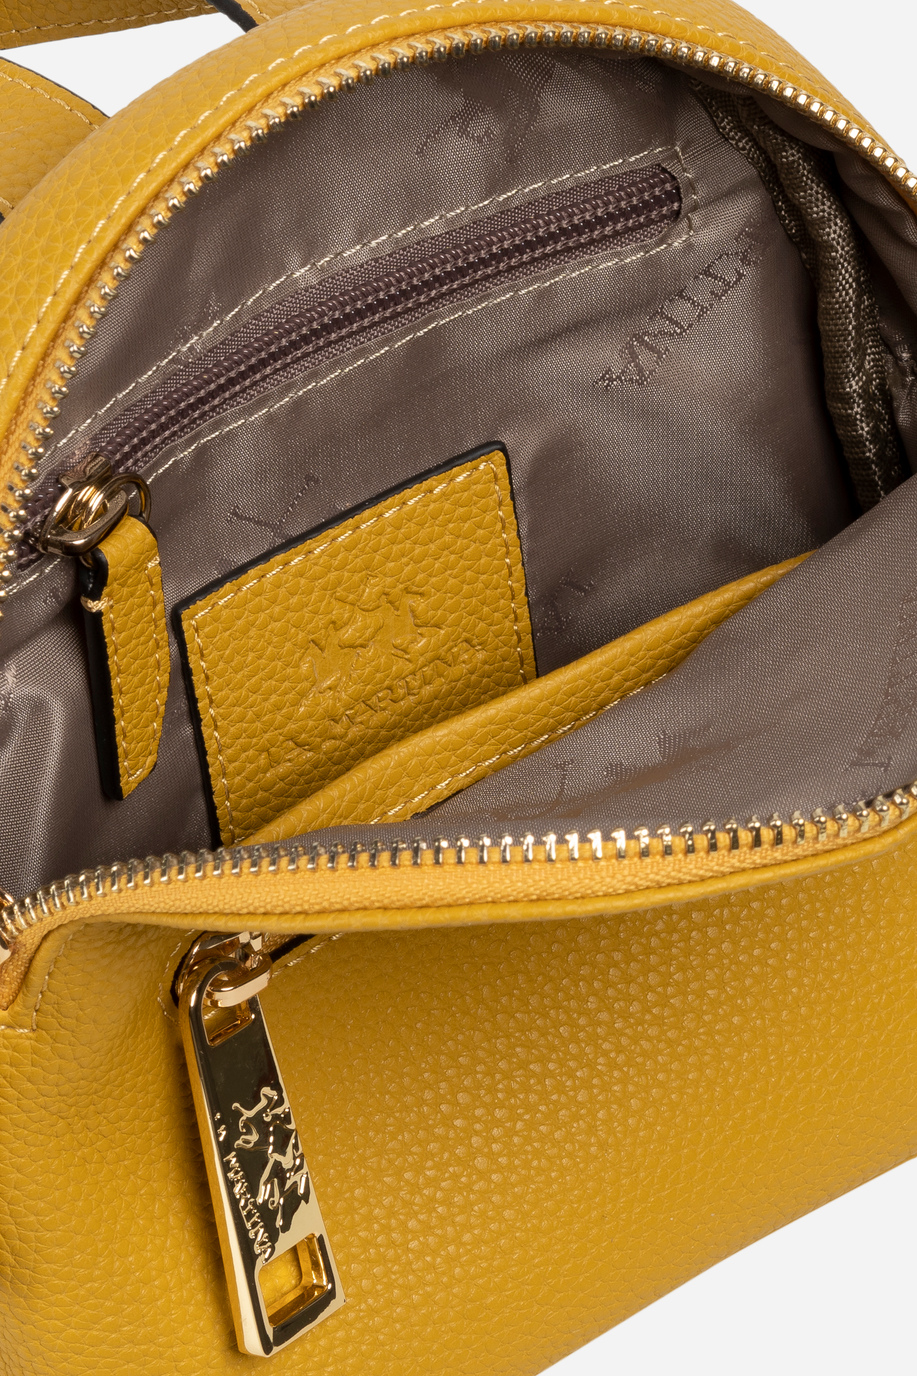 Women's leather backpack - Backpacks | La Martina - Official Online Shop